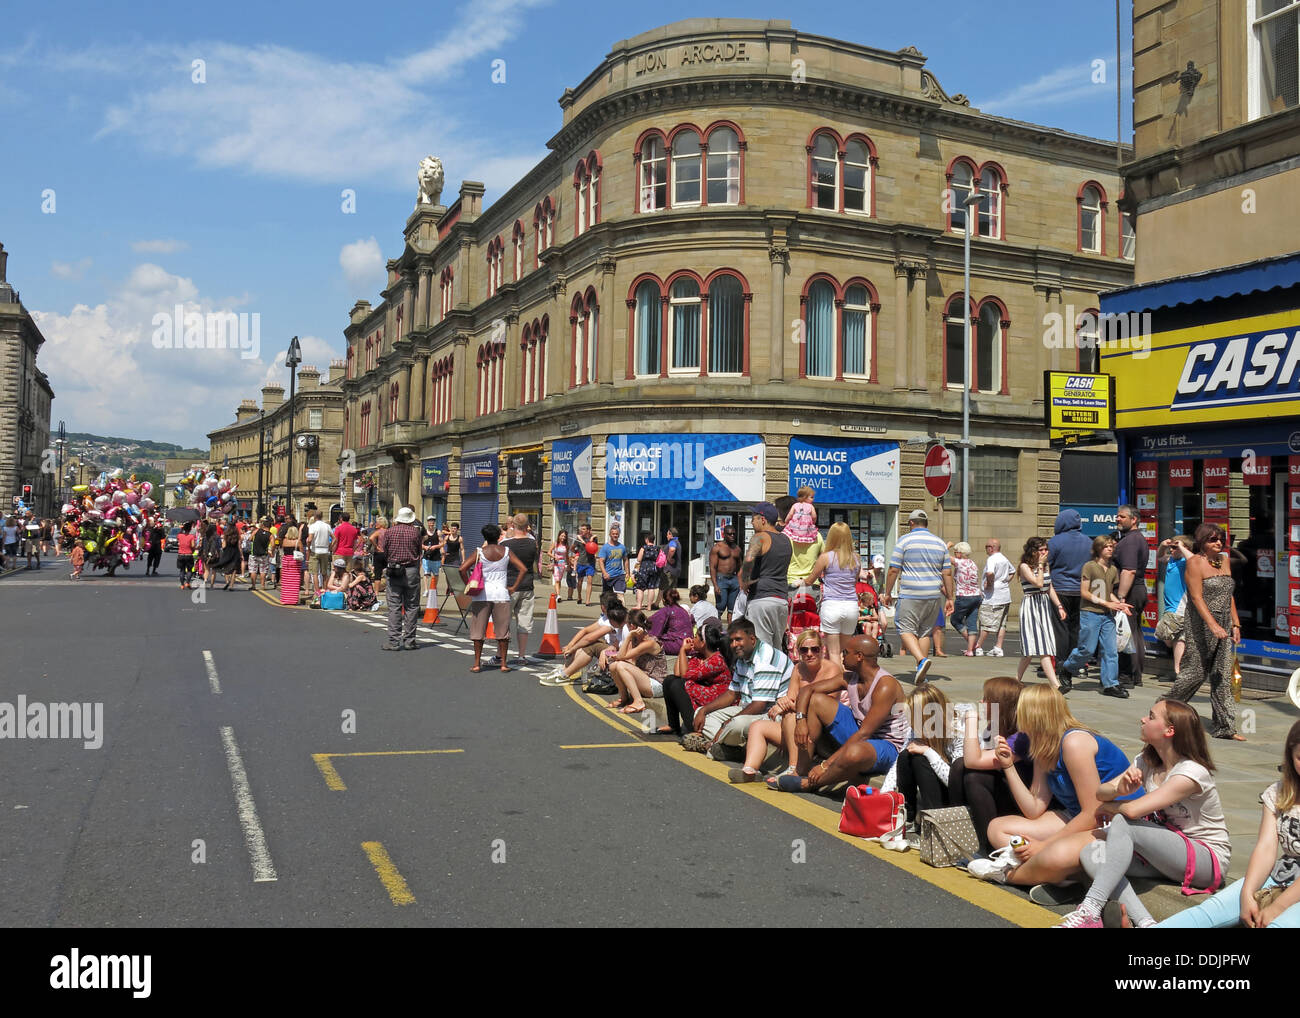 La foule danseurs costumés attendent de Huddersfield Carnival parade 2013 fête de rue Africains des Caraïbes Banque D'Images